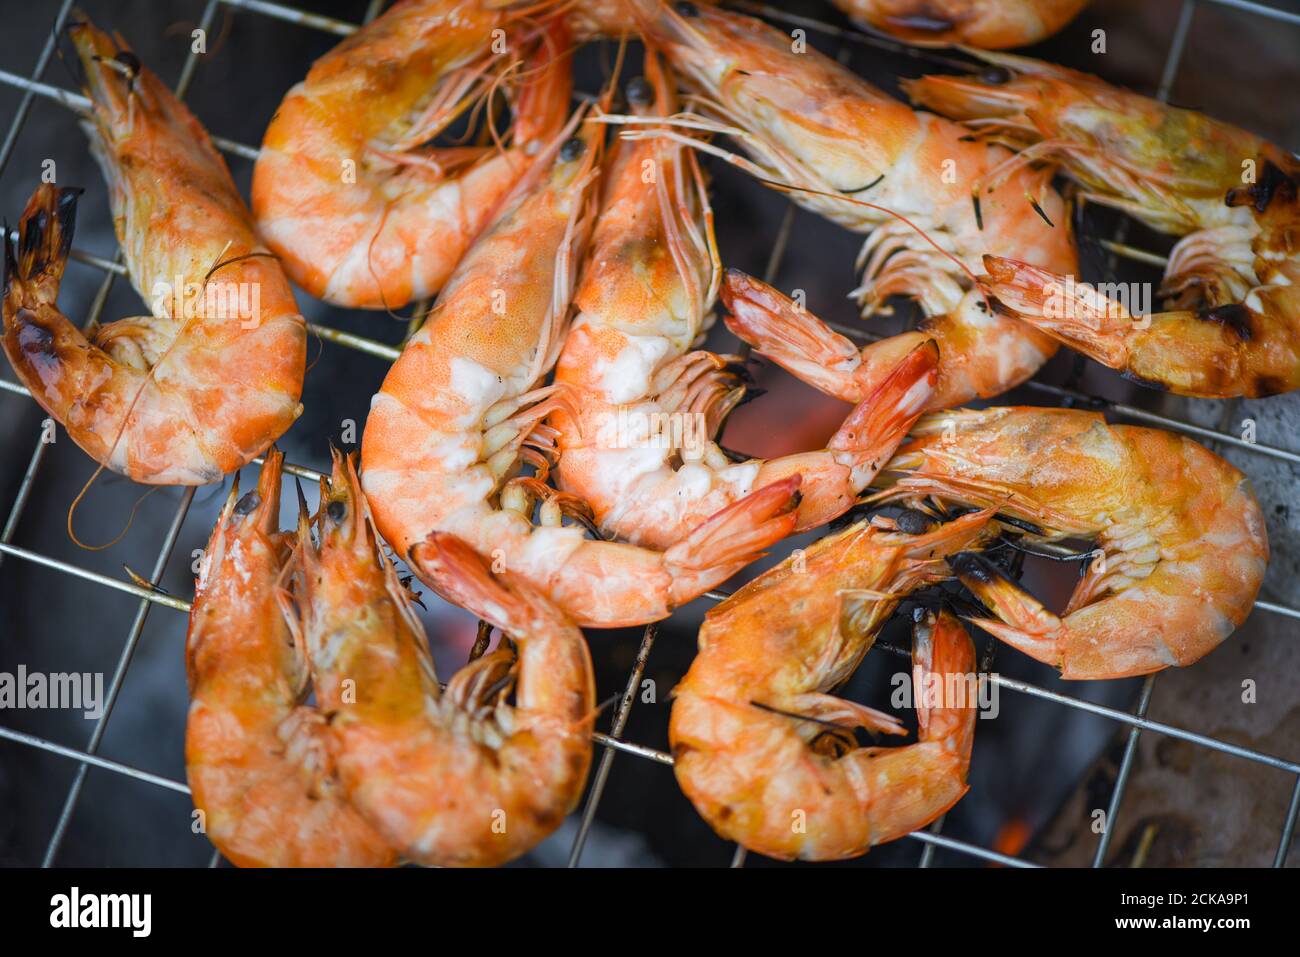 Shrimps gegrillter bbq Meeresfrüchte auf dem Herd / gekochte Garnelen  Garnelen Garnelen Auf Grill Grill verbrannt Stockfotografie - Alamy